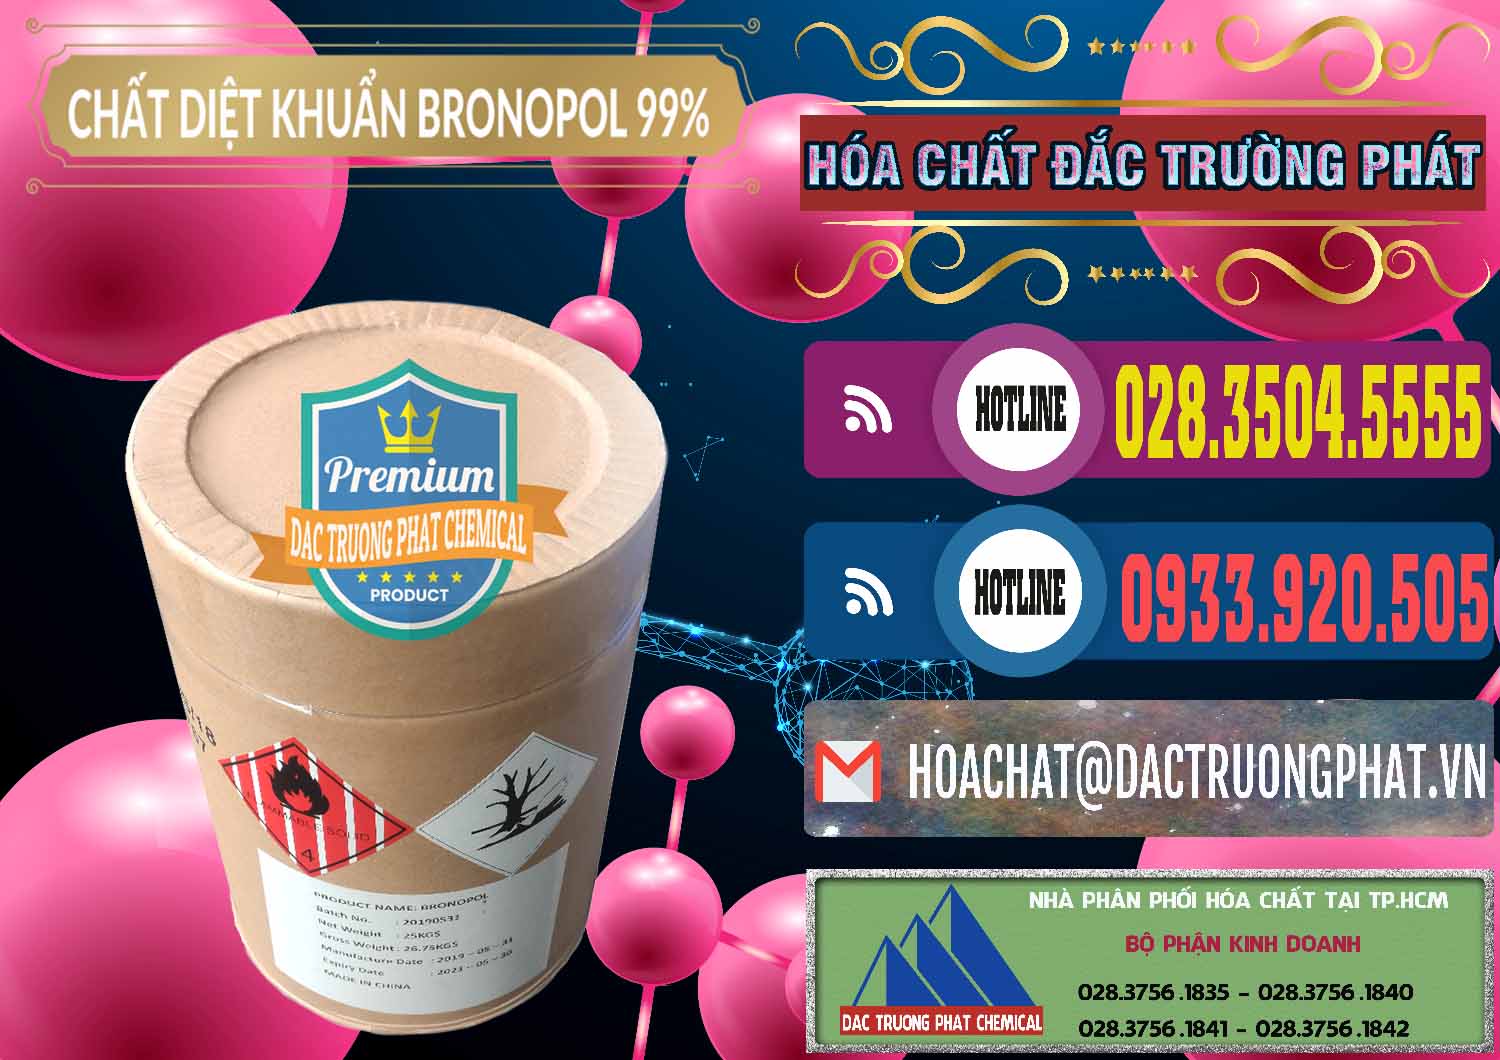 Đơn vị chuyên phân phối - bán Bronopol - C3H6BrNO4 Trung Quốc China - 0312 - Cty kinh doanh & cung cấp hóa chất tại TP.HCM - muabanhoachat.com.vn